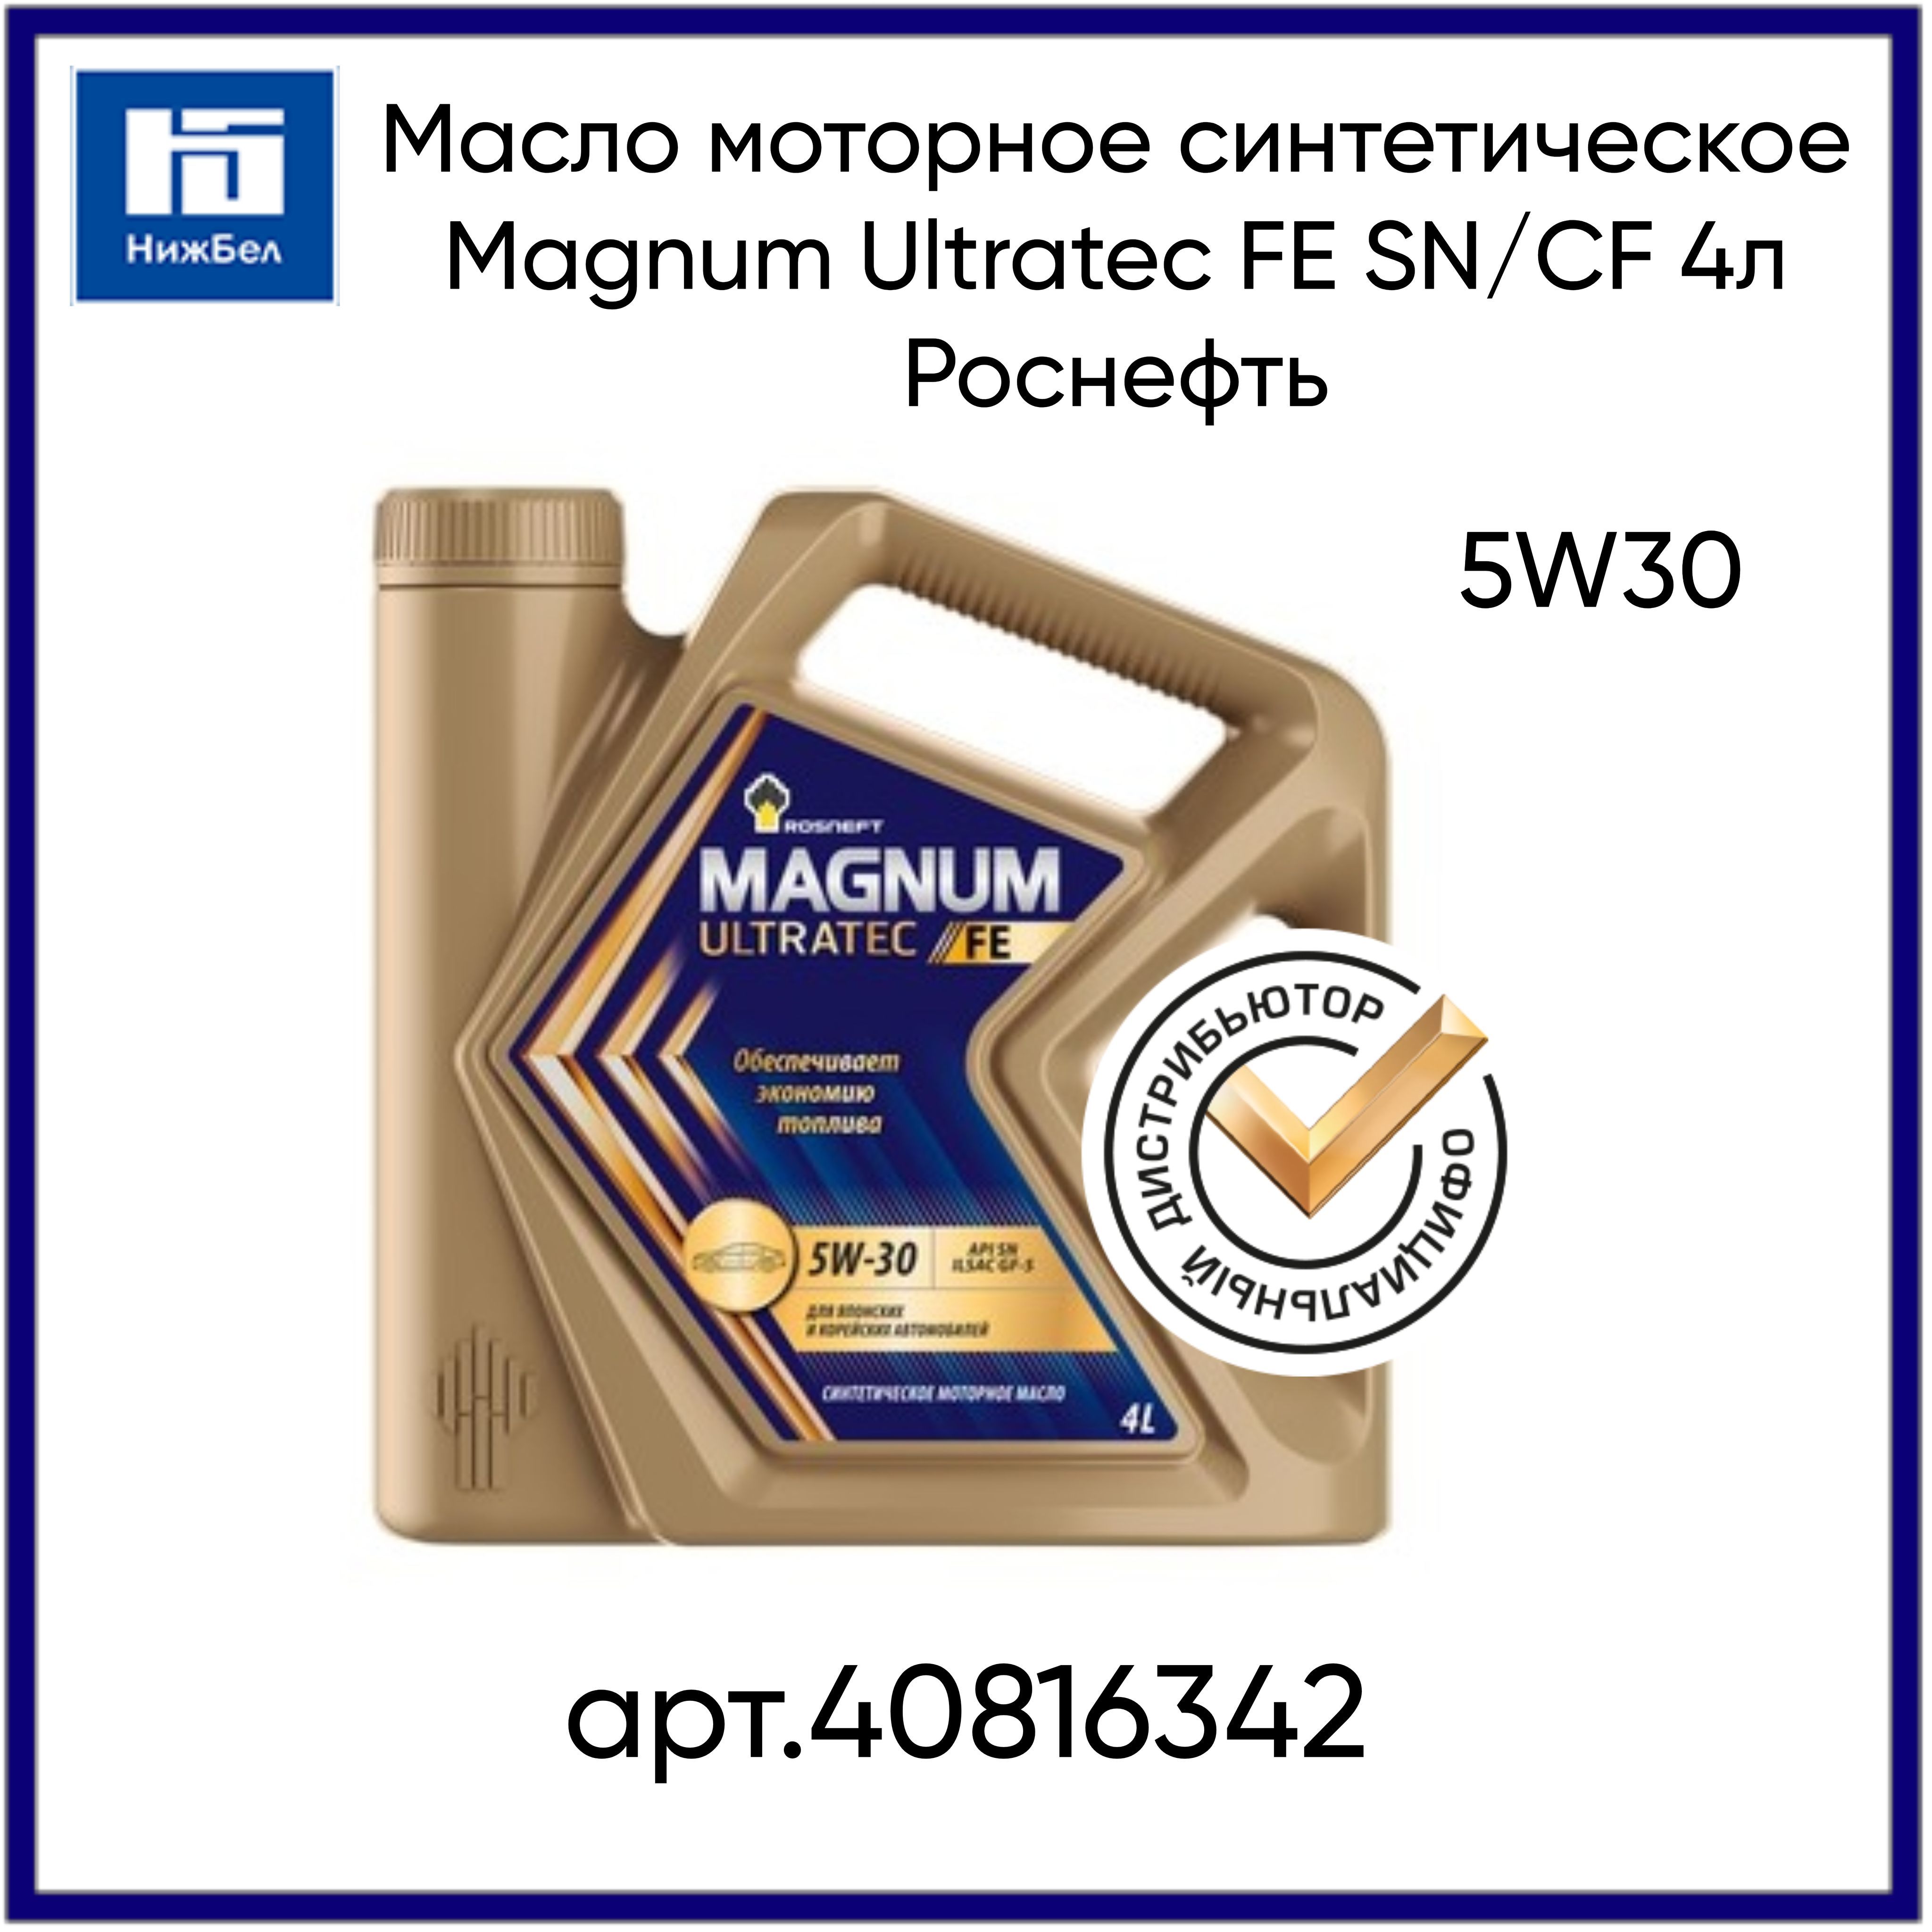 Rosneft Magnum Ultratec 5w-30 синтетическое 4 л. Магнум Ультратек Фе 5w30. Масло магнум ультратек роснефть отзывы